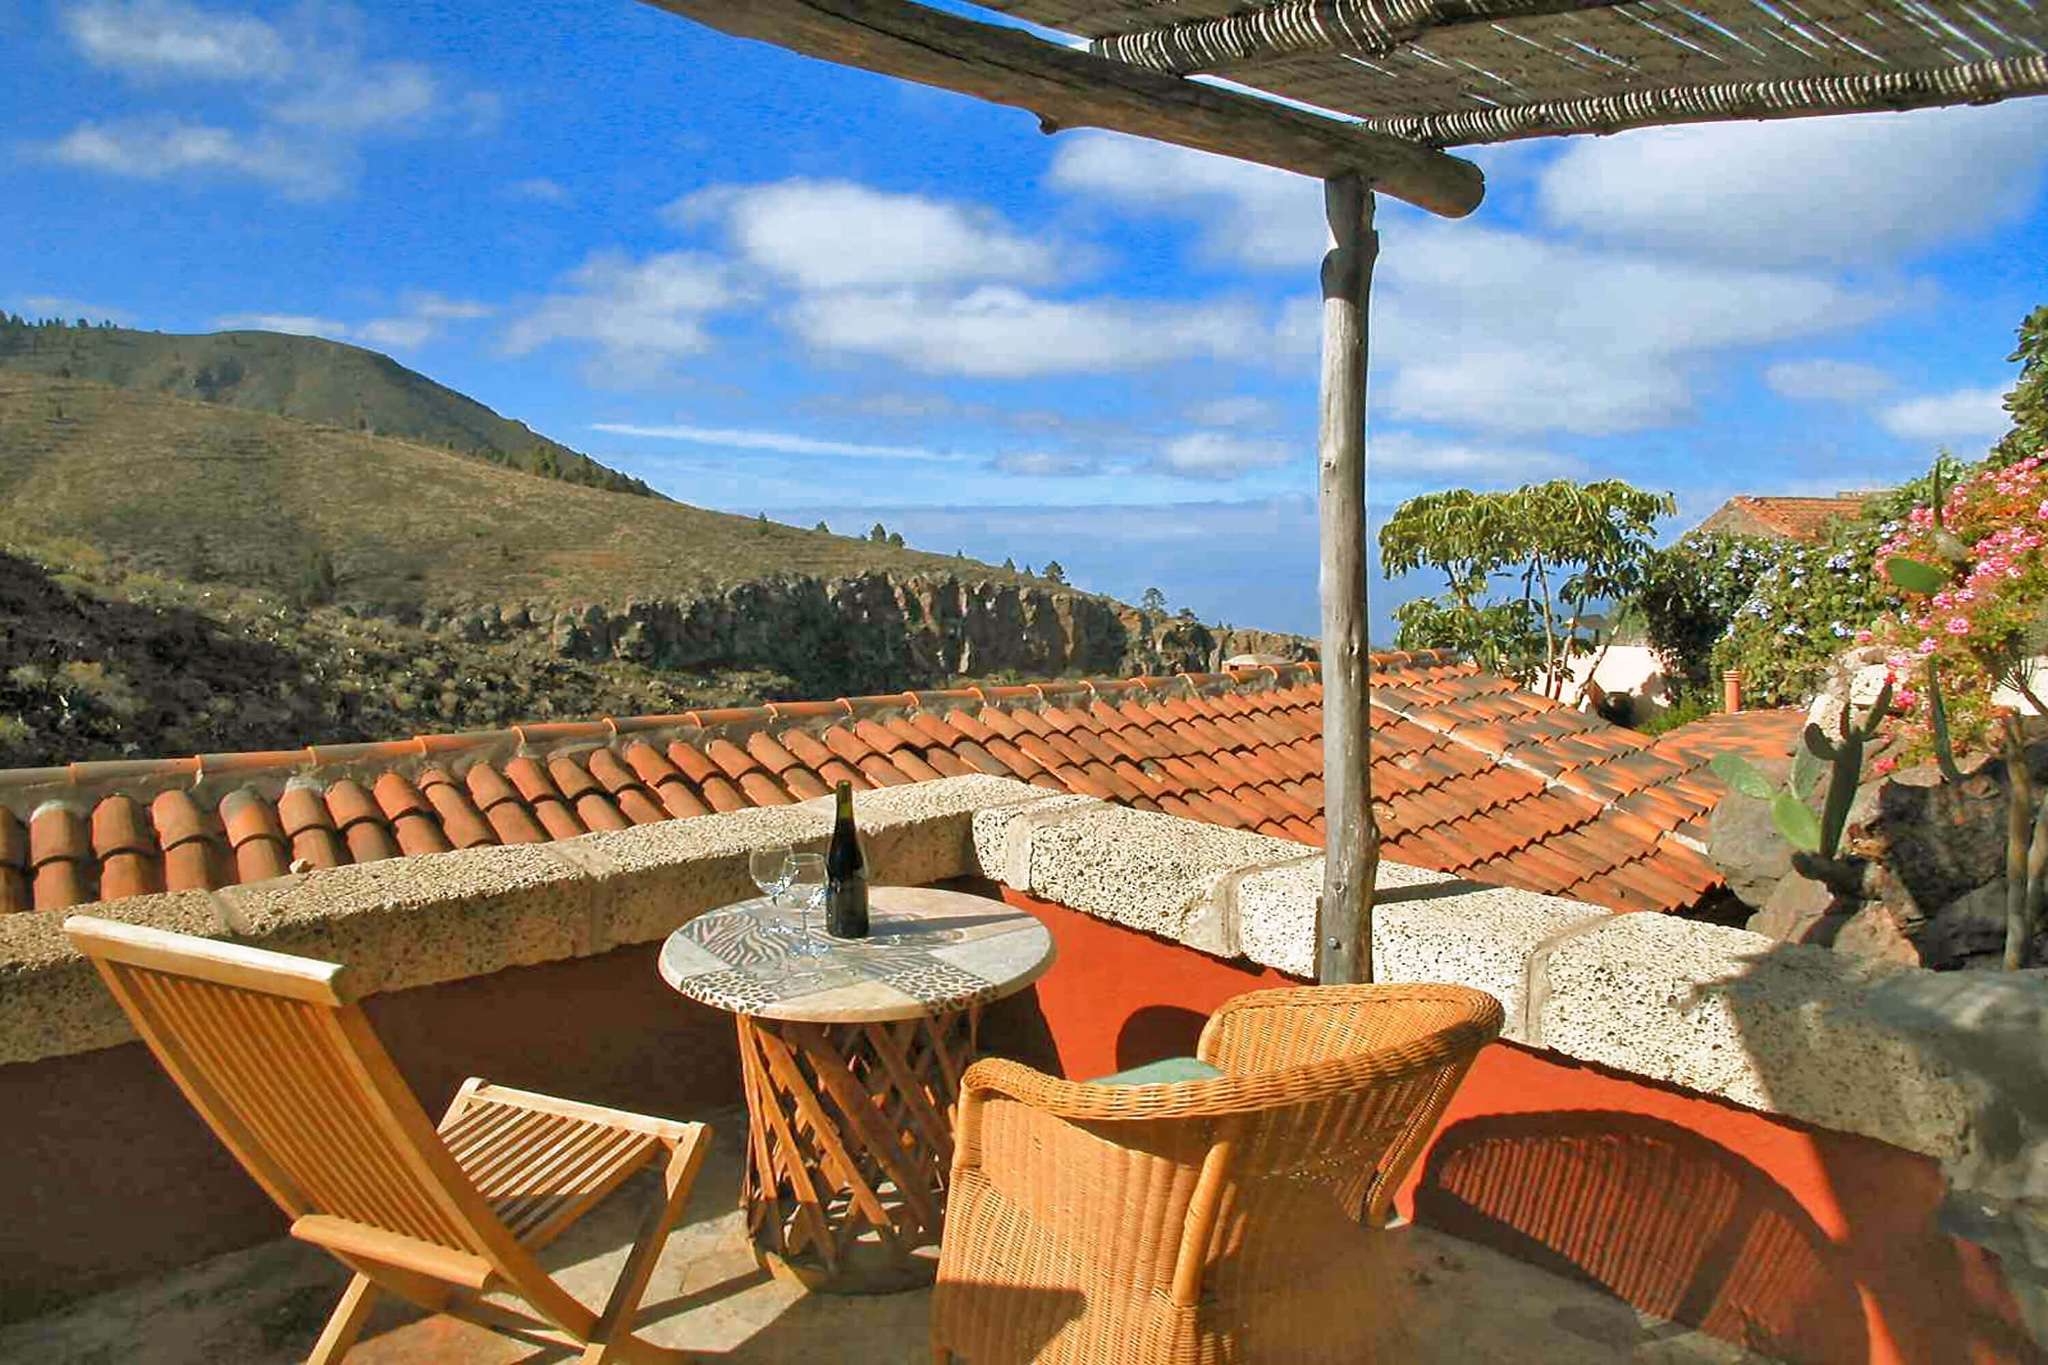 Belle maison de vacances avec piscine commune pour des vacances à la campagne entourée par les magnifiques paysages de Tenerife